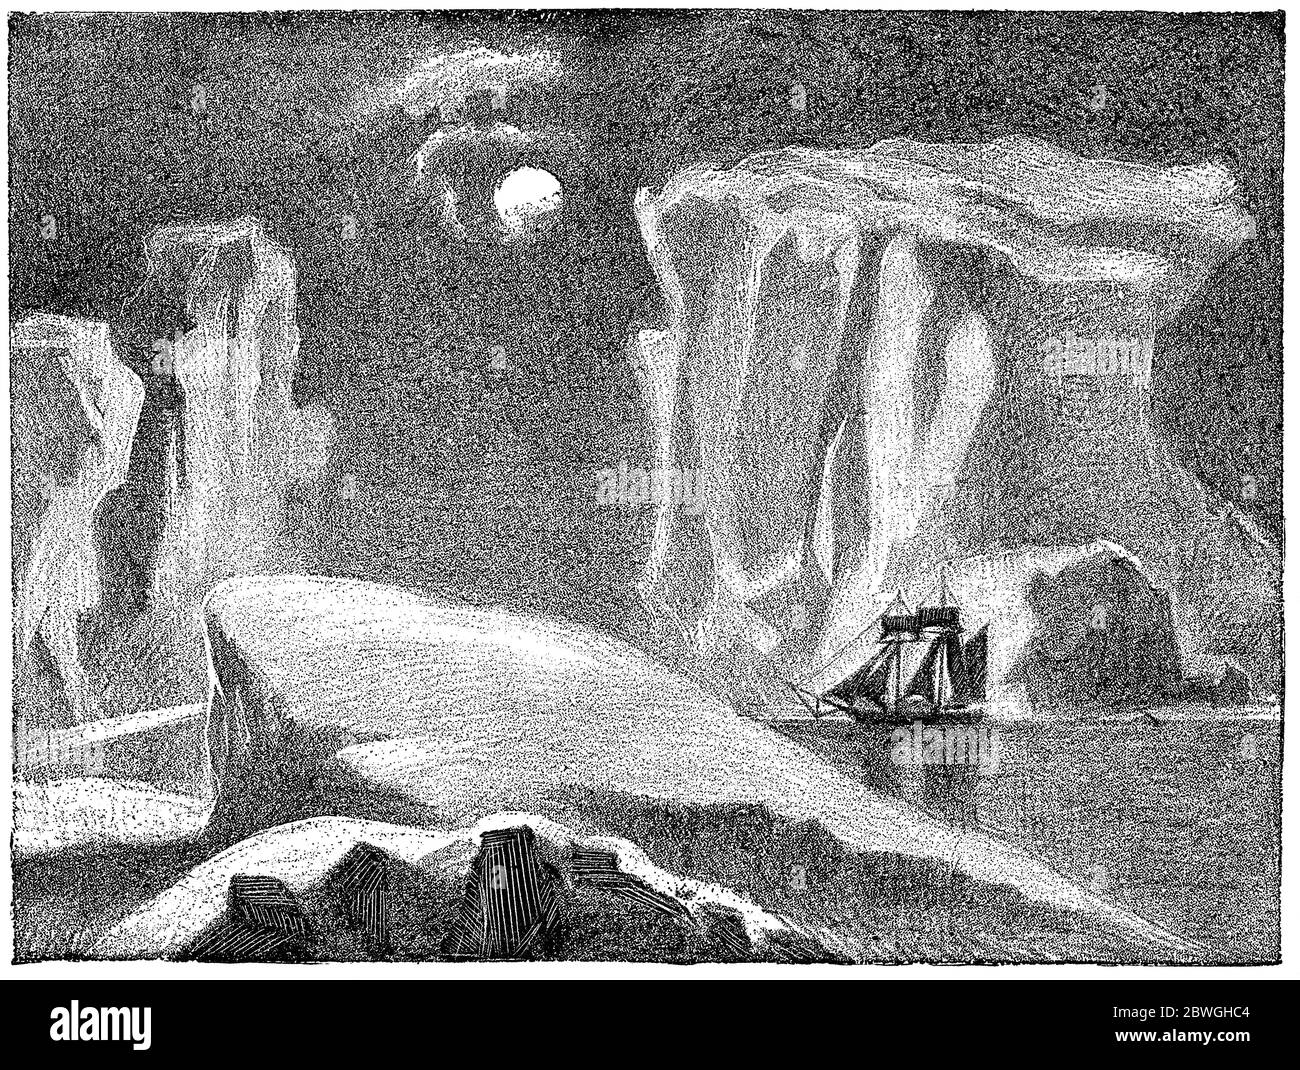 Bateau dans des icebergs sous la lune polaire. Illustration du XIXe siècle. Fond blanc. Banque D'Images